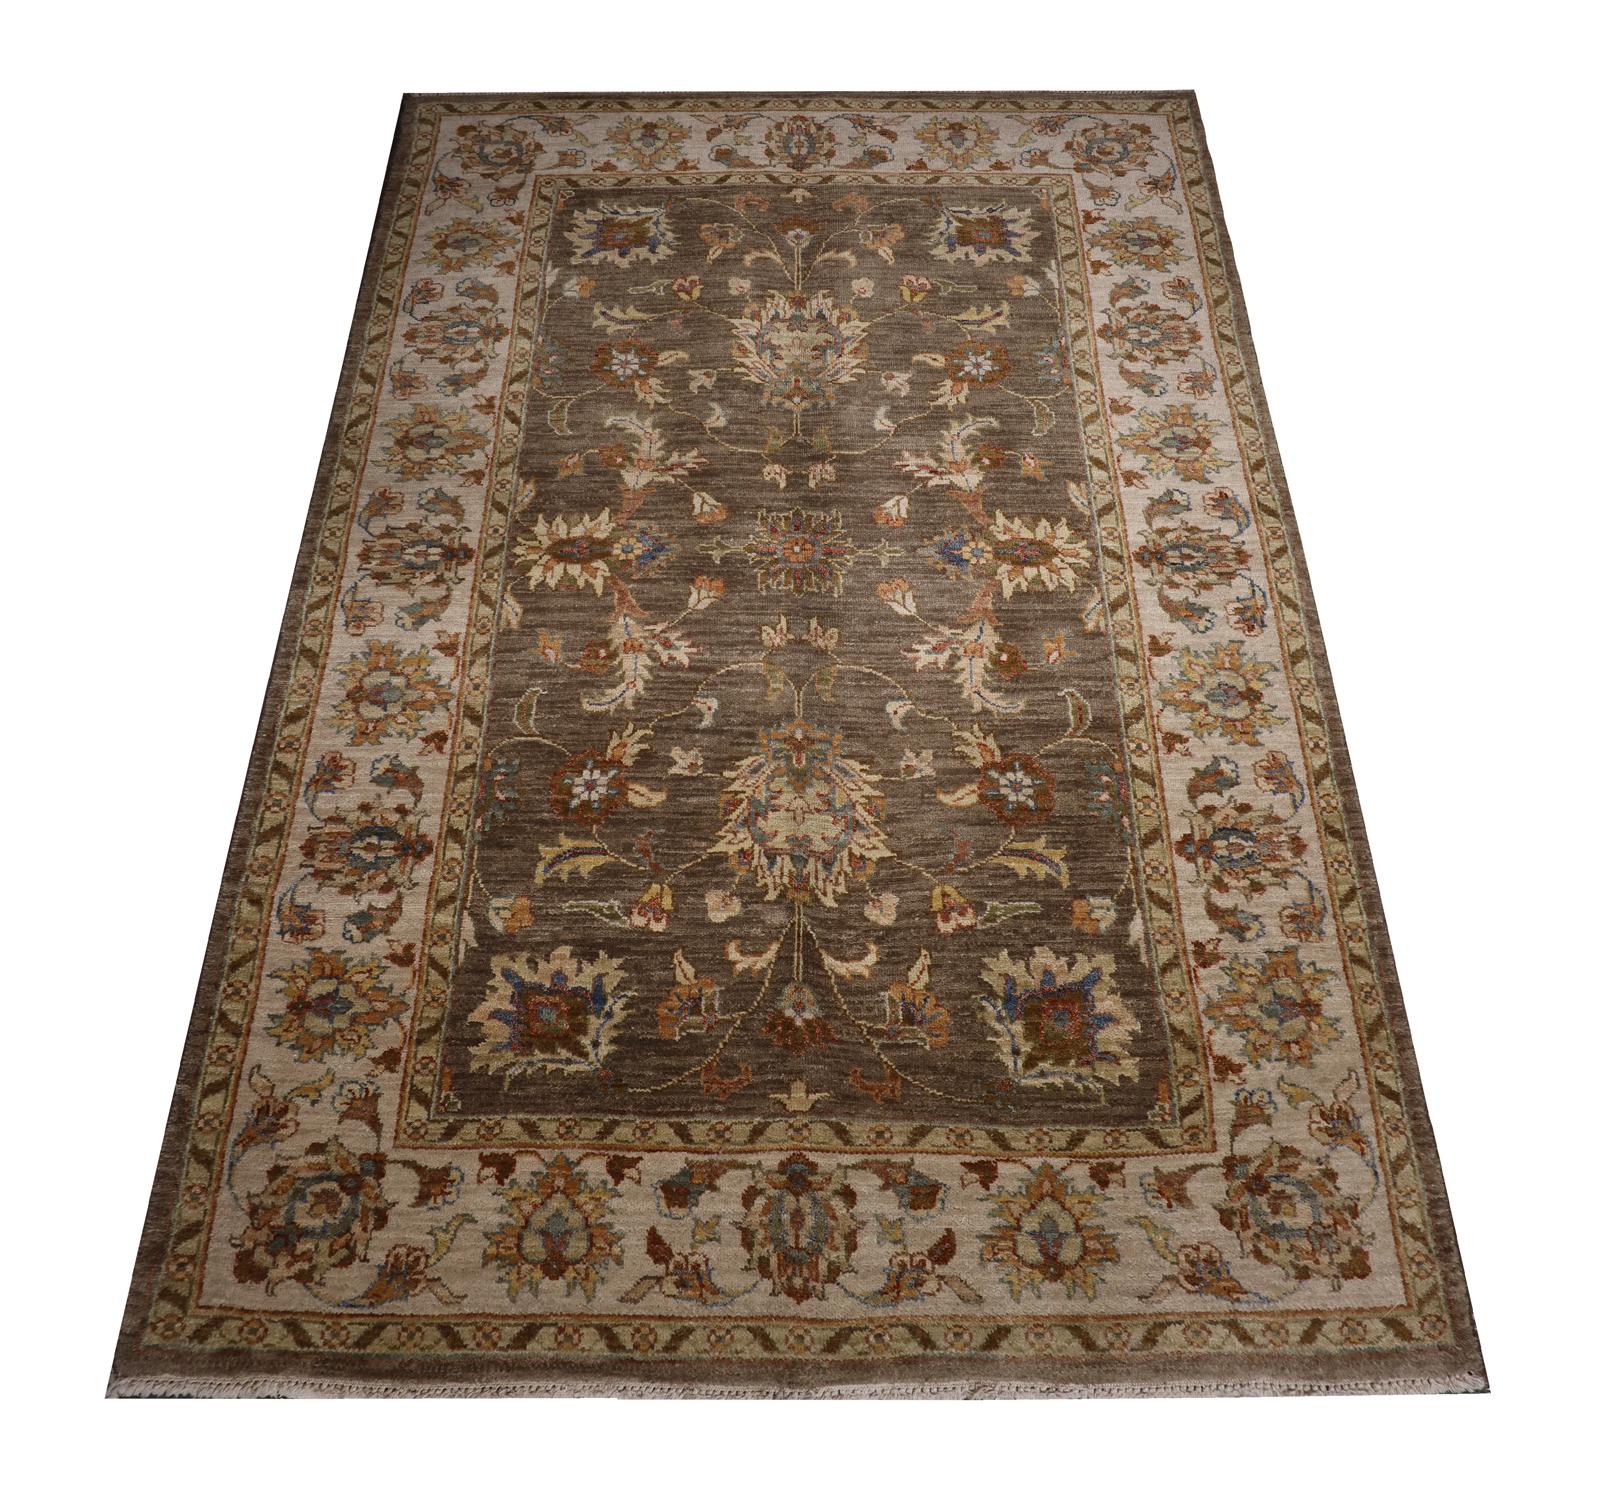 Dieser Vintage-Teppich ist ein indischer Ziegler-Teppich, der von Hand aus feiner Wolle und Baumwolle gewebt wurde. Das Design wurde auf einem luxuriösen braunen Hintergrund mit Akzenten in Creme, Beige und Orange gewebt, die das symmetrische